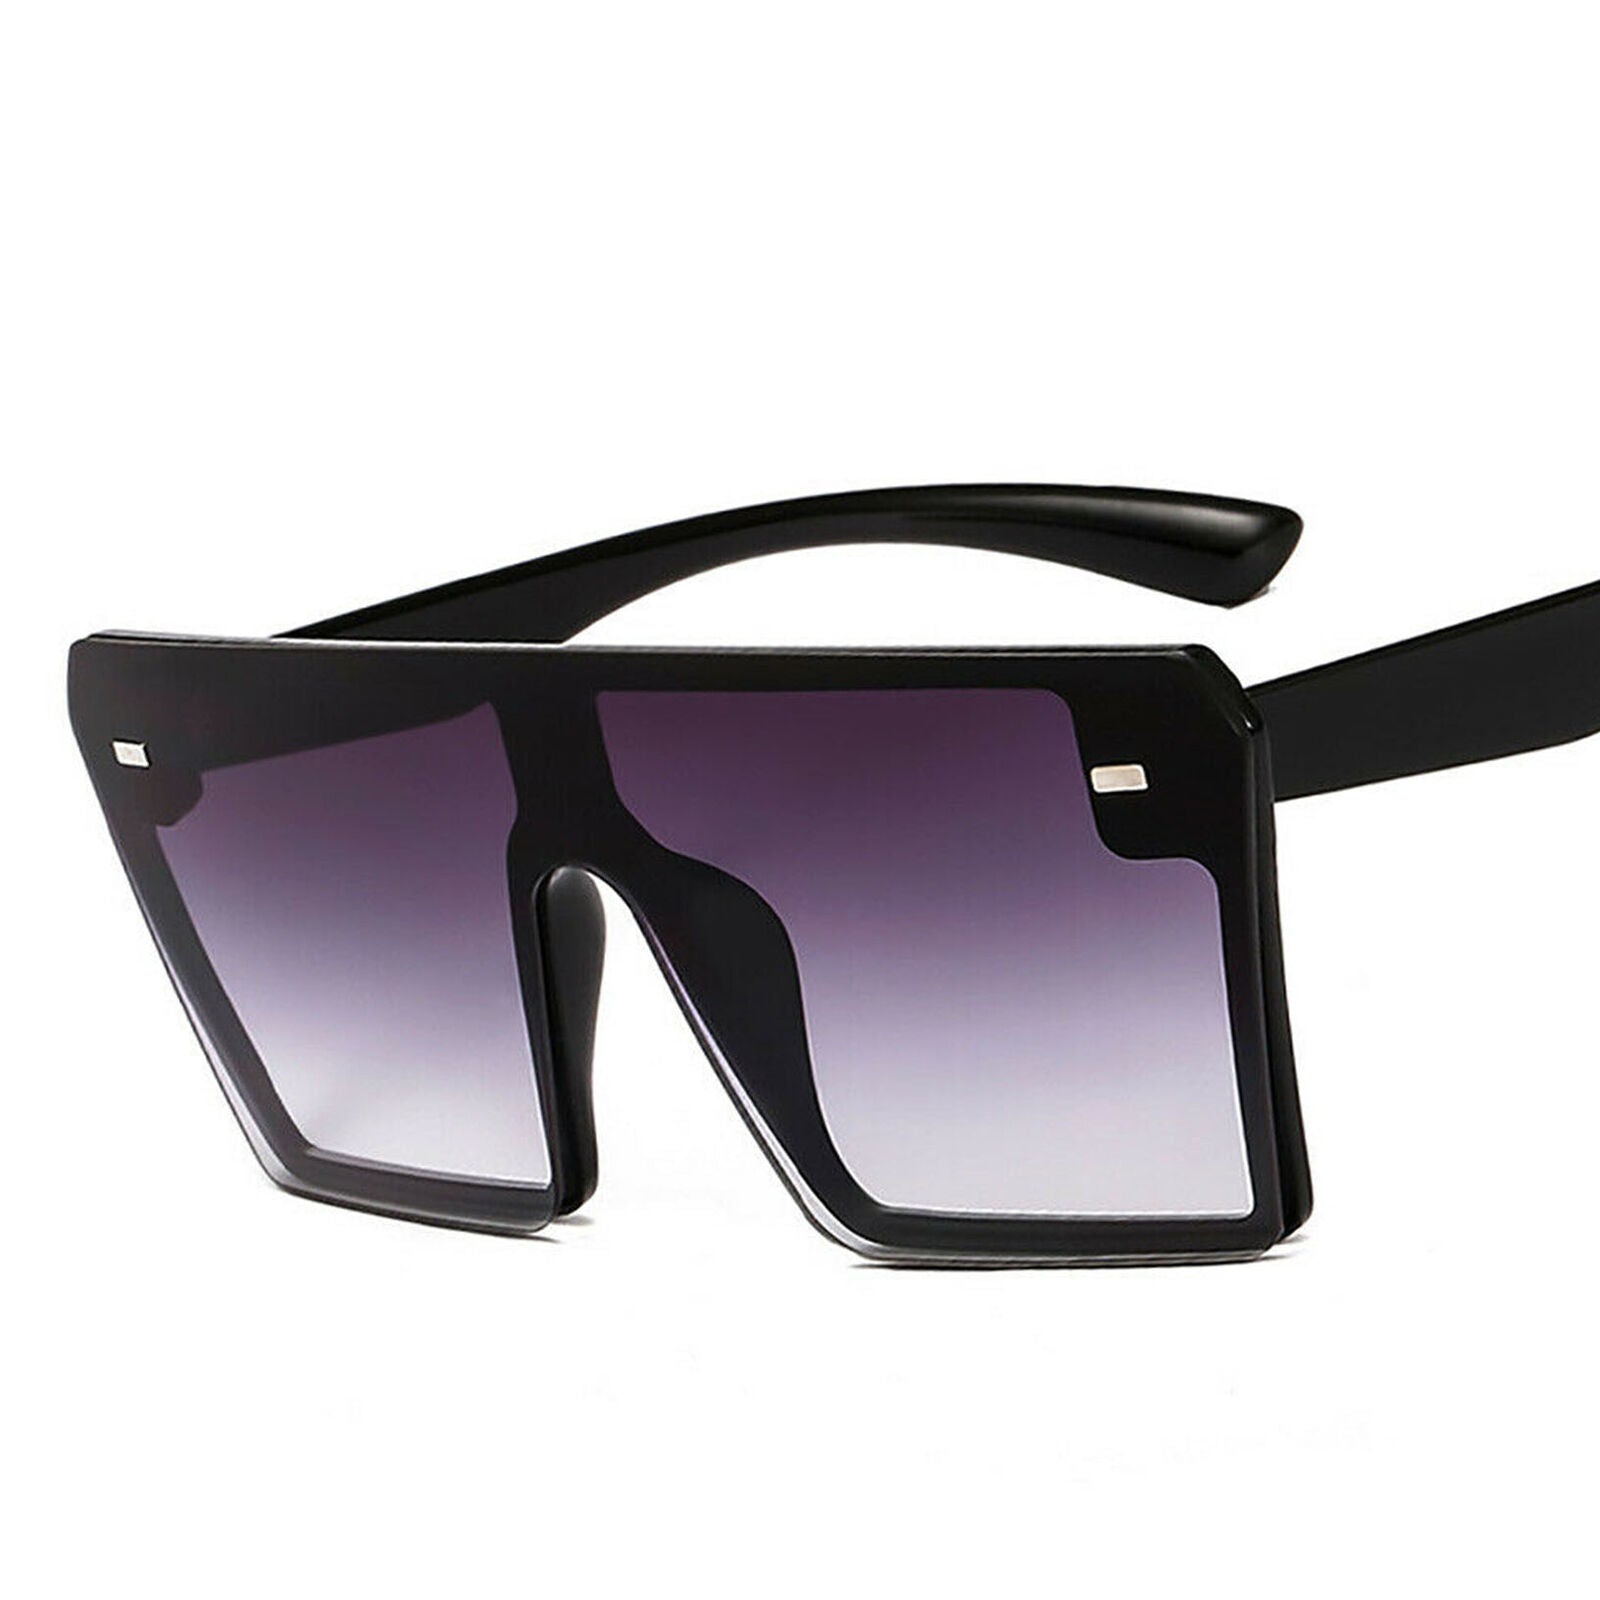 Trending 2020 Oversized Square Sunglasses For Women Driving Outdoor Sun Glasses